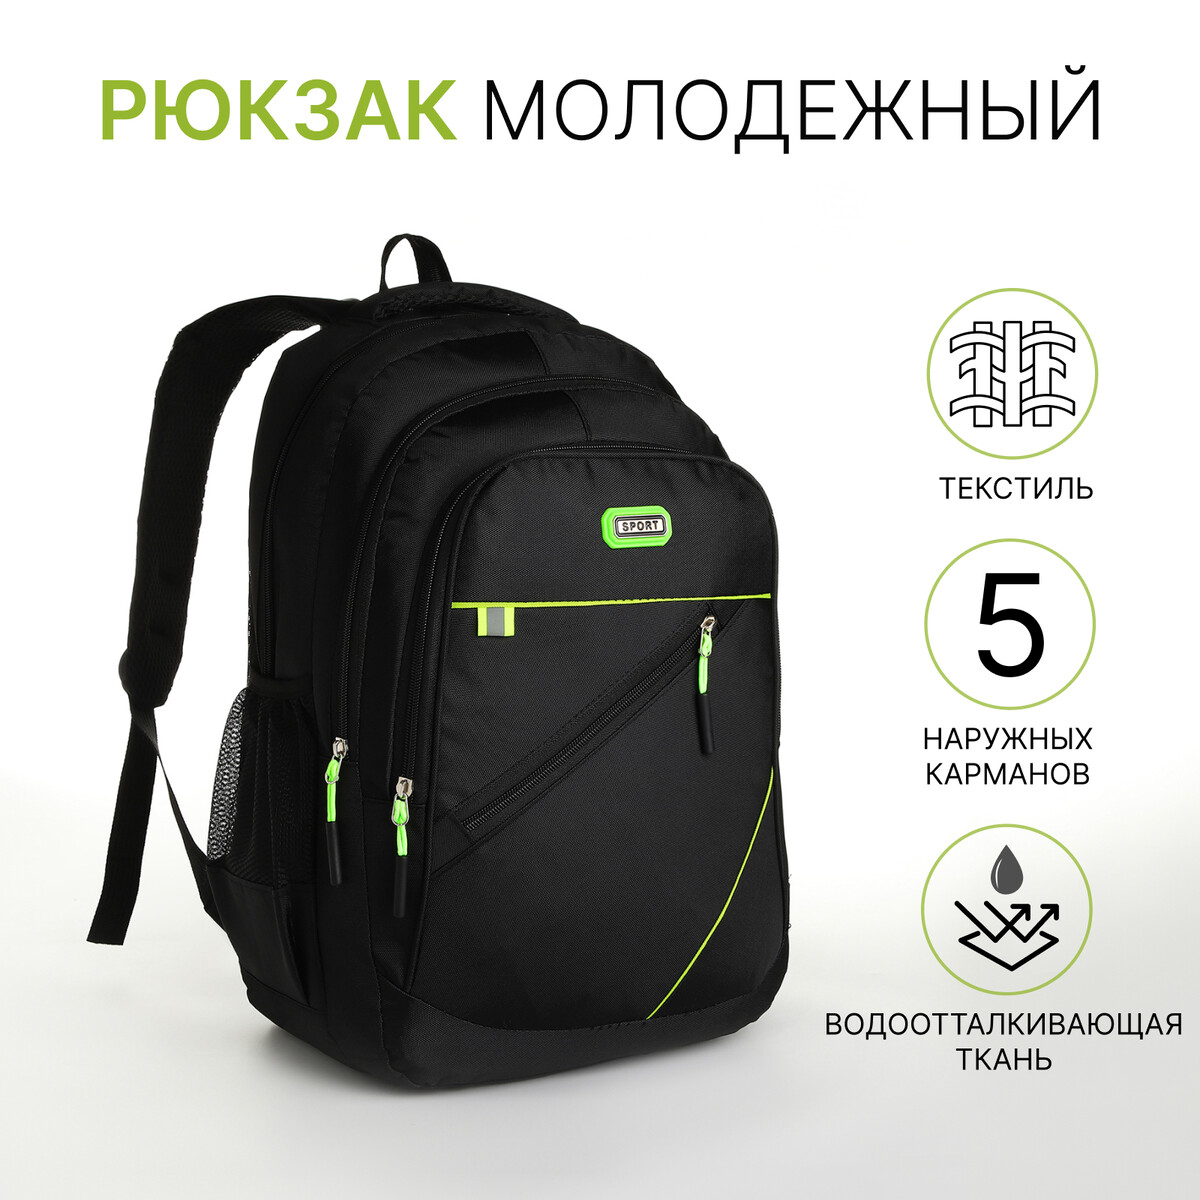 Рюкзак молодежный из текстиля на молнии, 5 карманов, цвет черный/зеленый рюкзак молодежный из текстиля на молнии 5 карманов зеленый